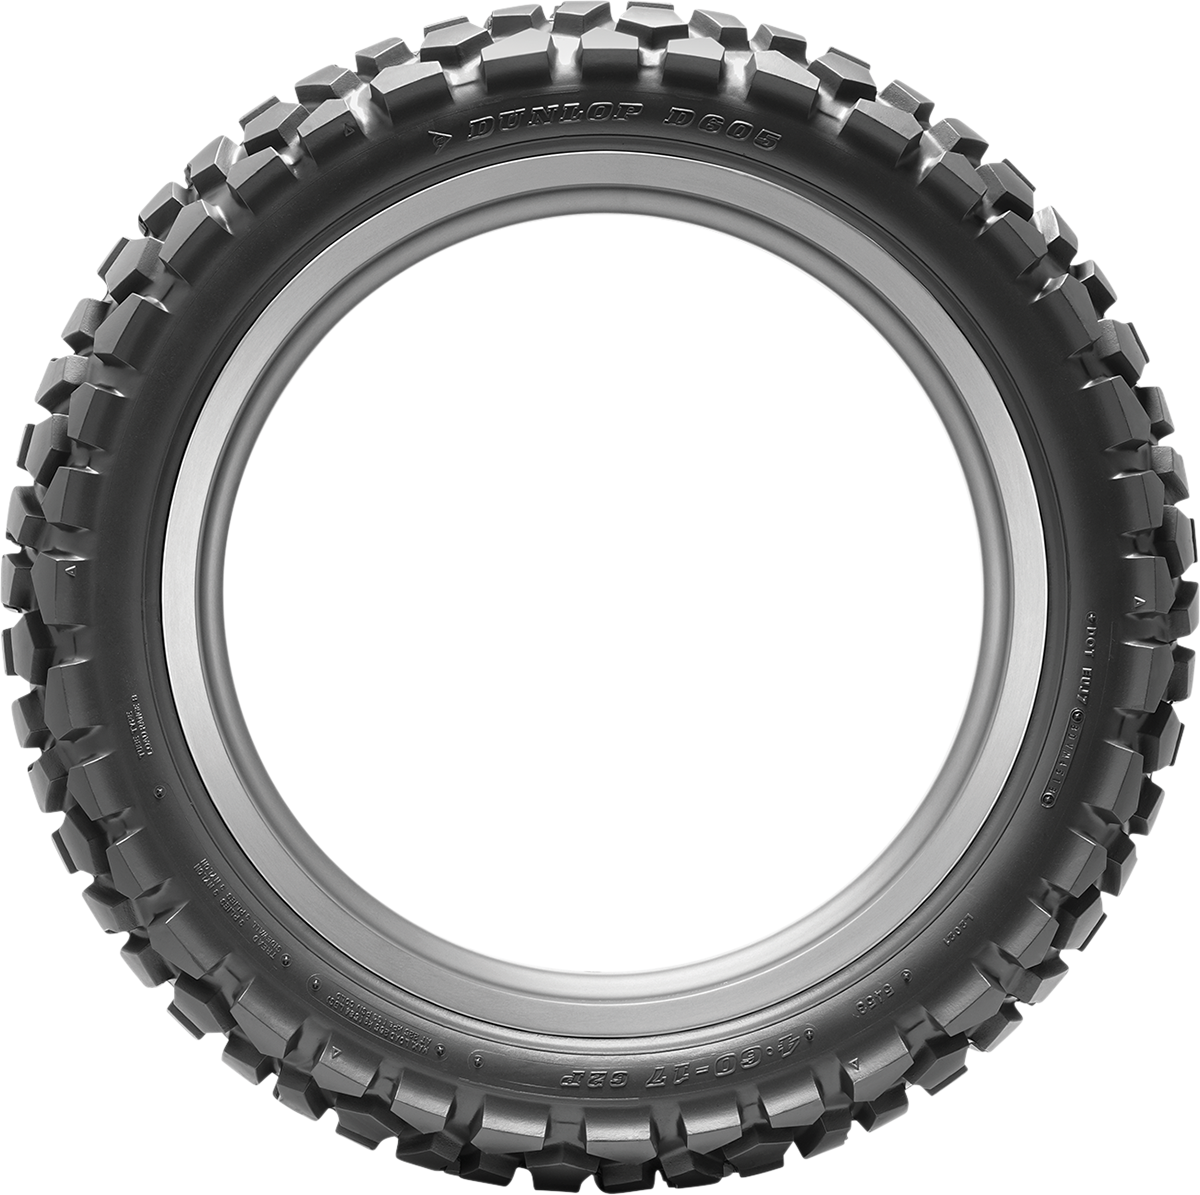 DUNLOP Tire - D605 - Rear - 120/80-18 - 62P 45154388